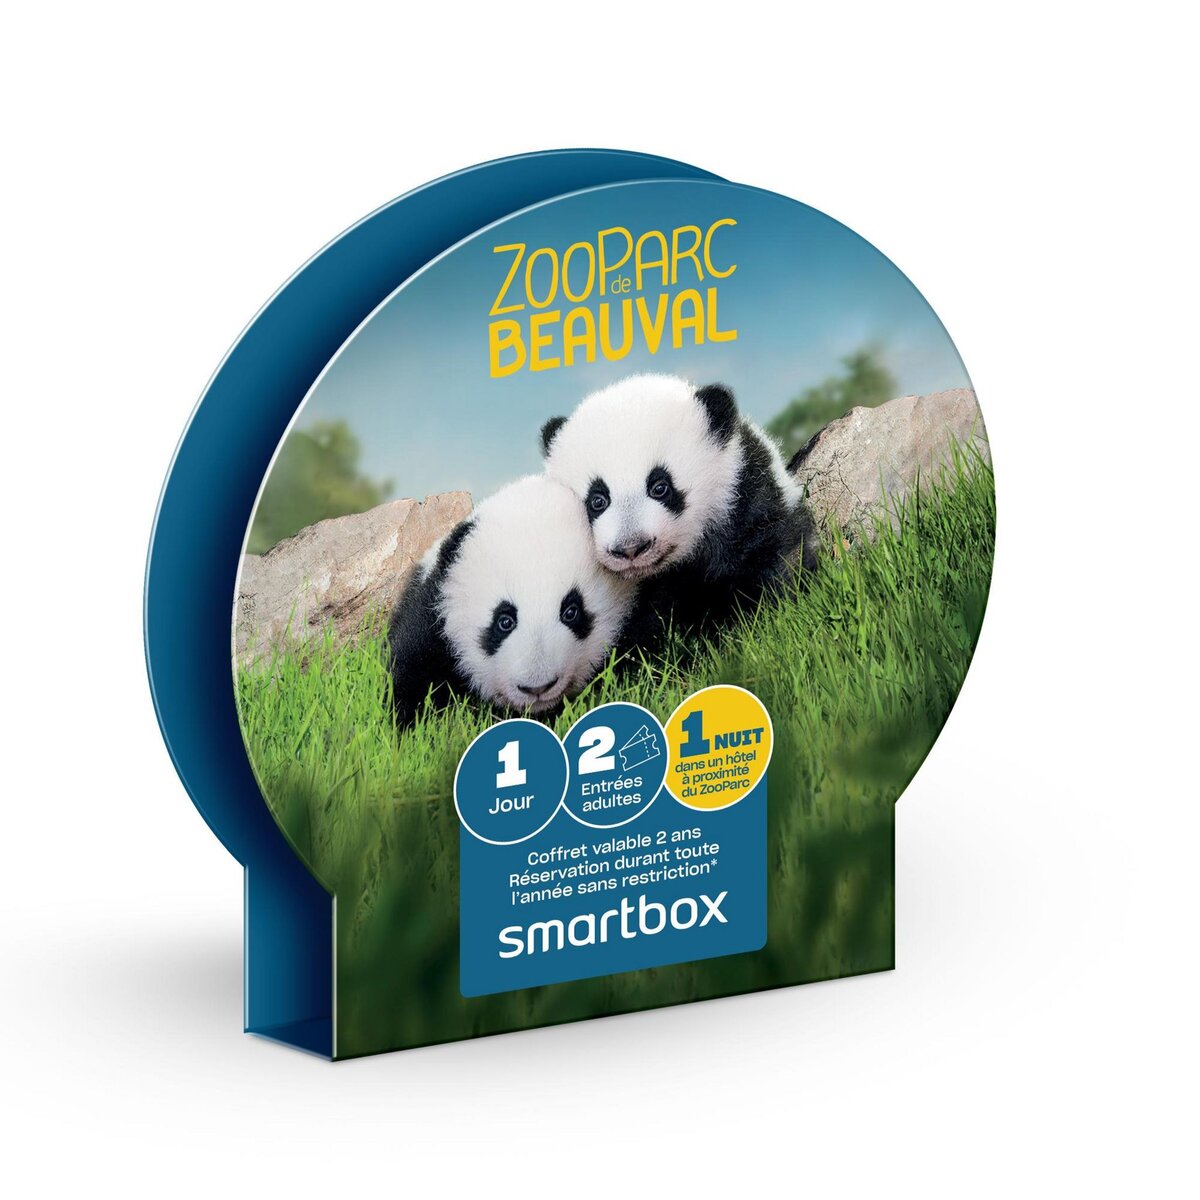 Smartbox ZooParc de Beauval séjour - Coffret Cadeau Séjour